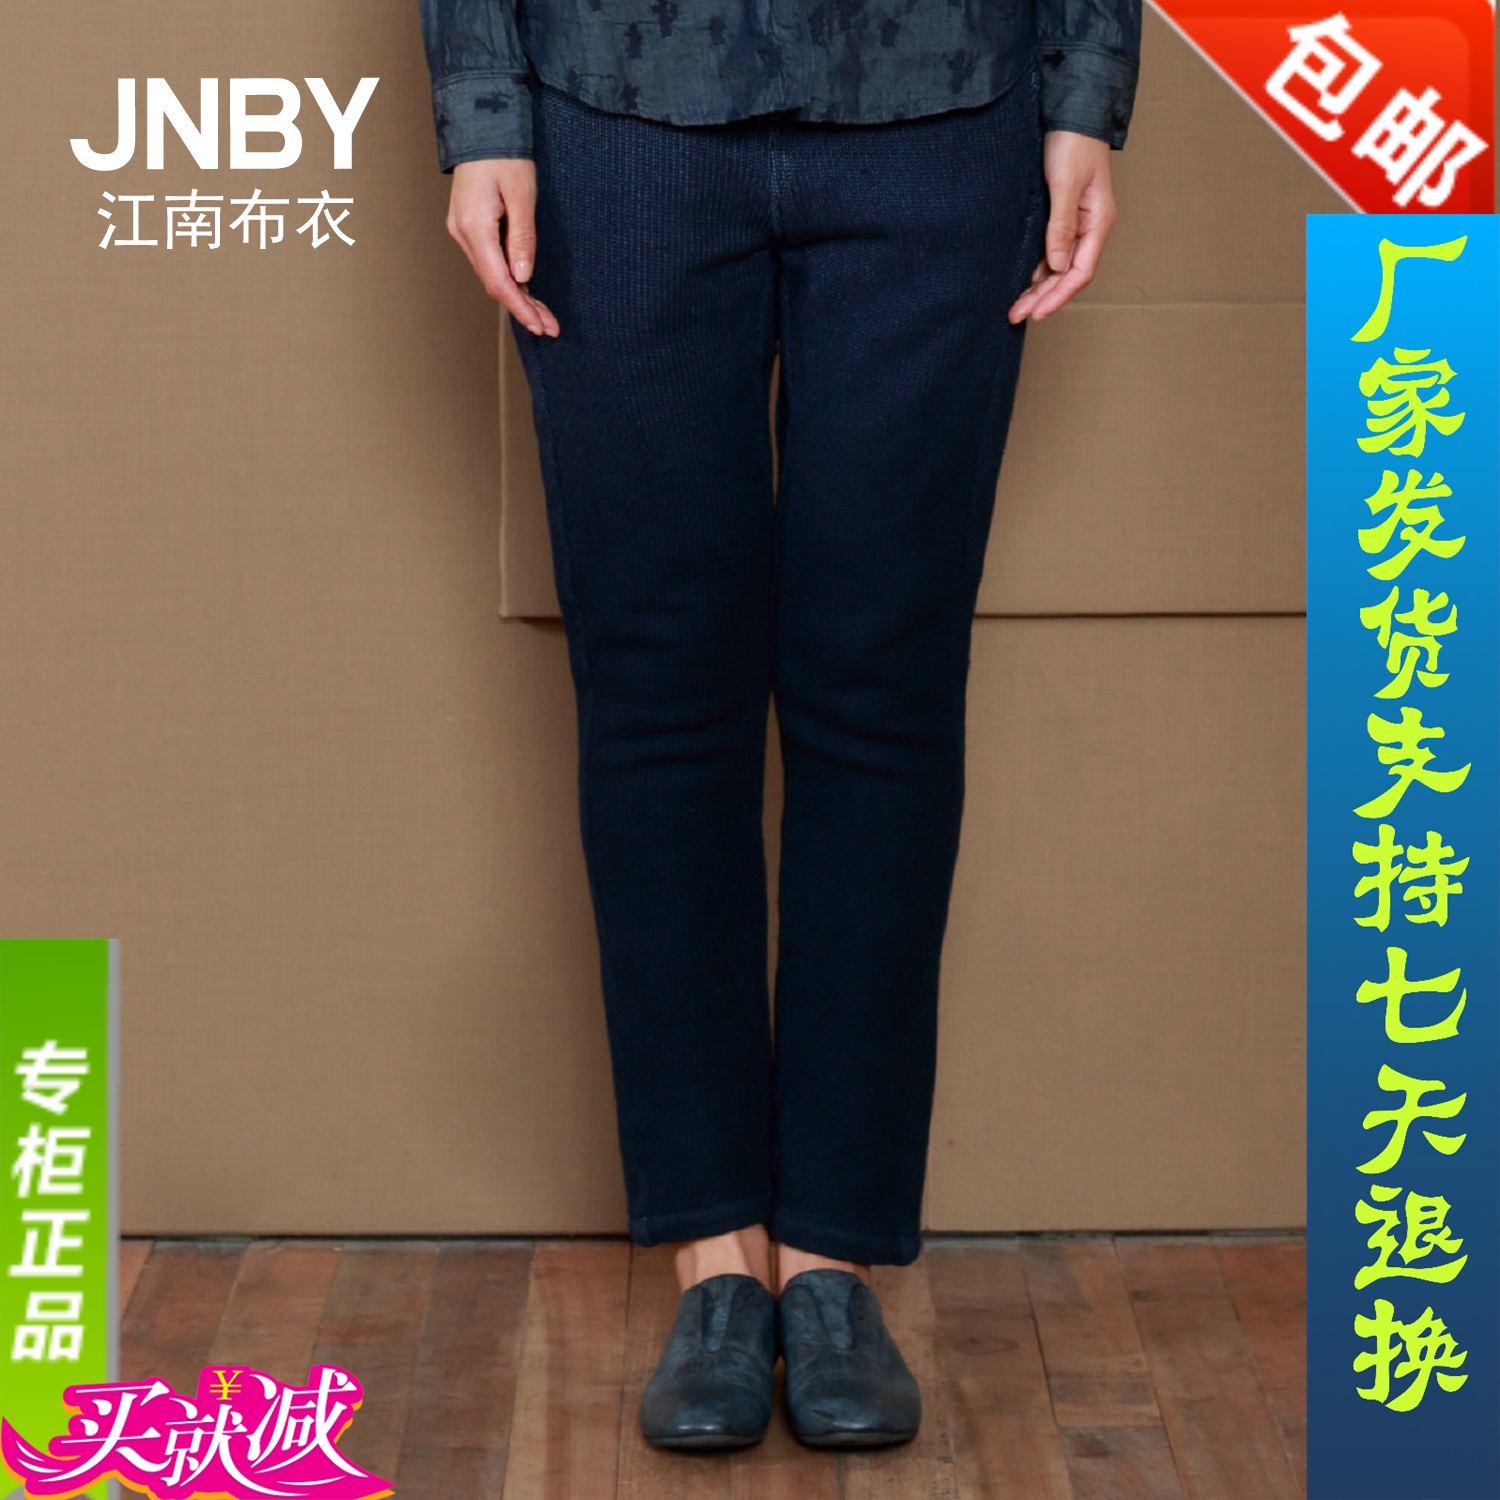 包邮JNBY江南布衣2015春季长裤新款铅笔裤通勤女休闲裤5C23031